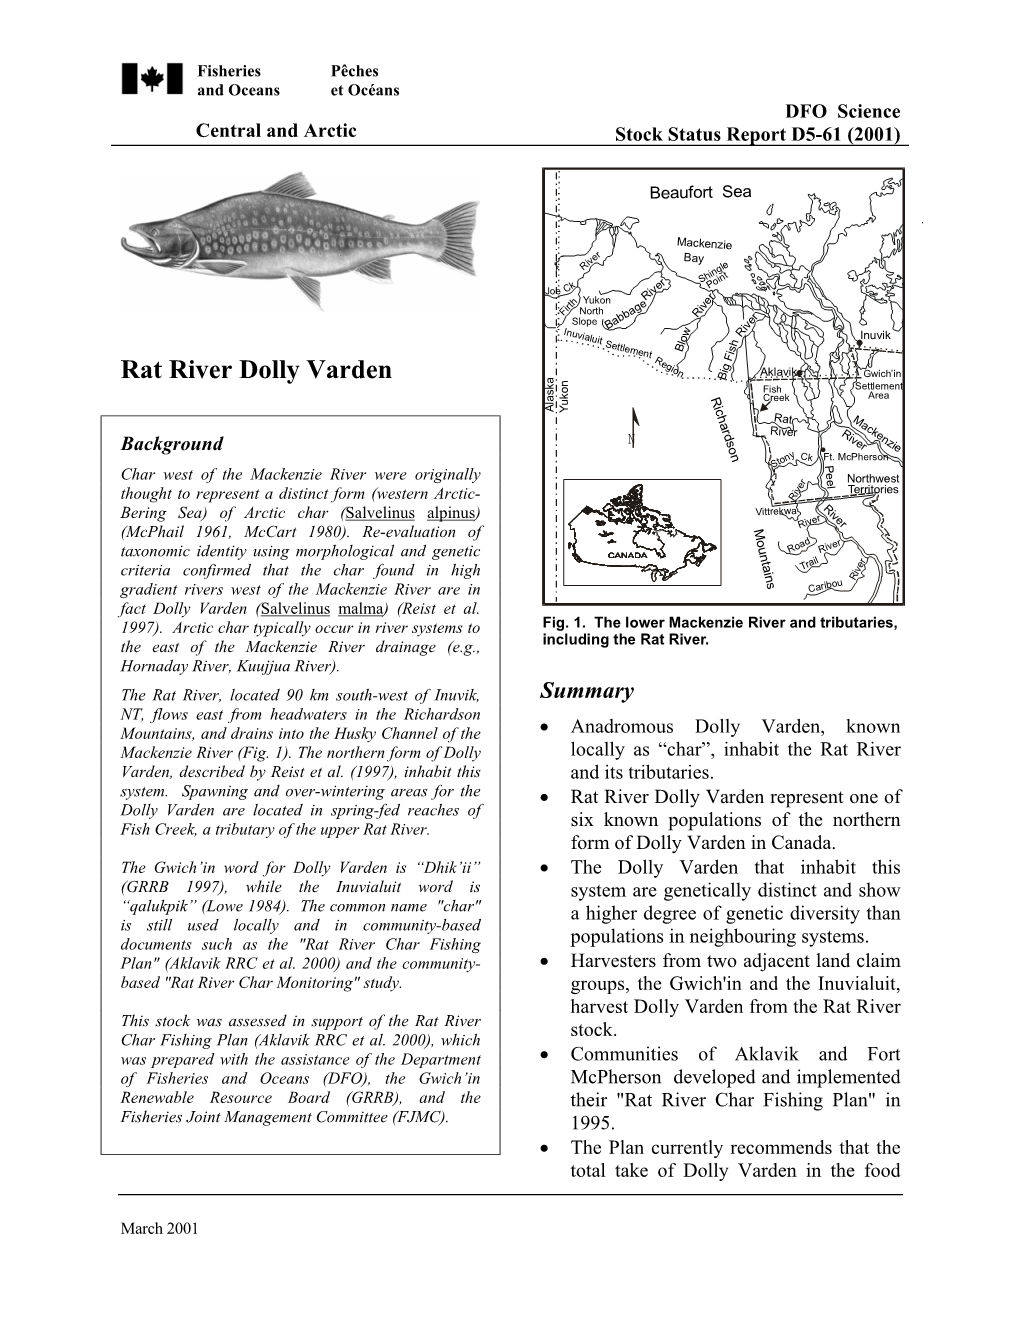 Rat River Dolly Varden B Fish Settlement R Creek Area I C Alaska Yukon H Ra M a T a R C D R K Iver Ri E N S Ve Nz Background O R Ie N Y on Ck Ft